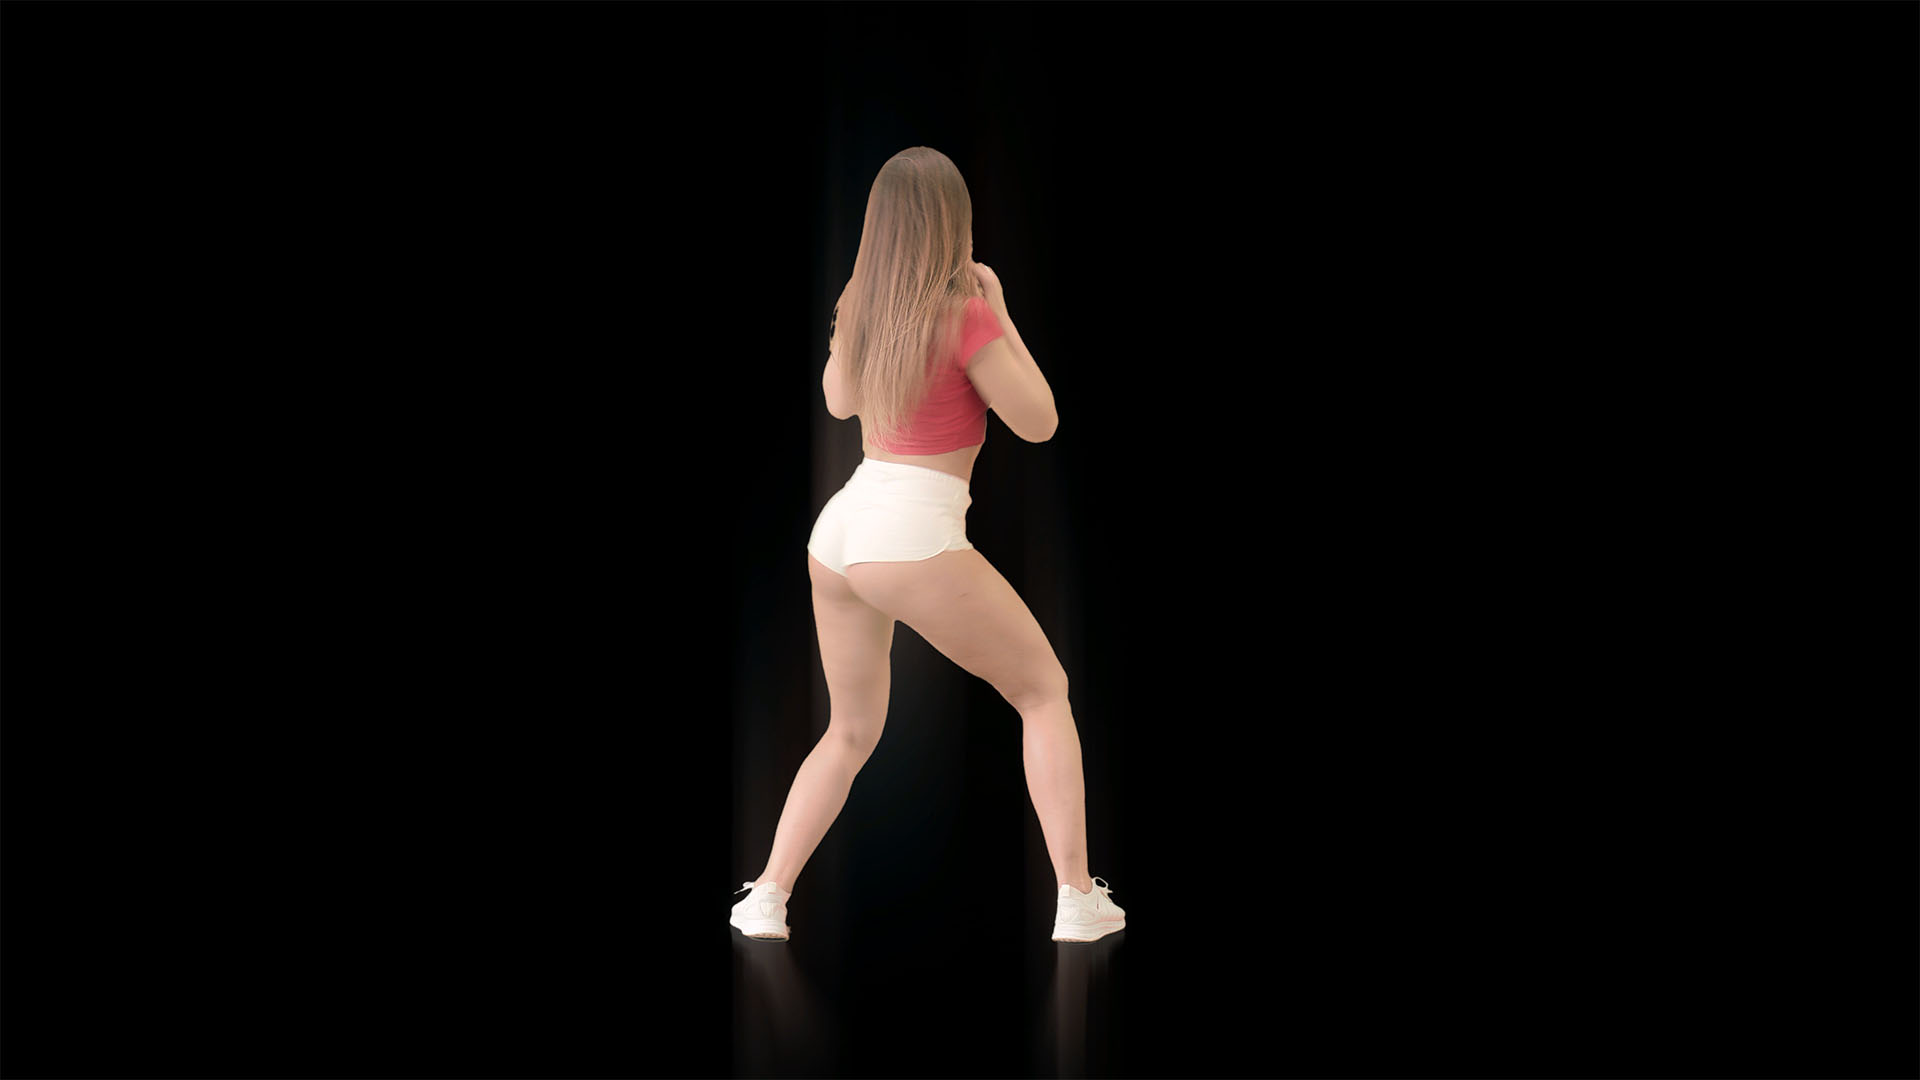 twerking dance video footage vj loop